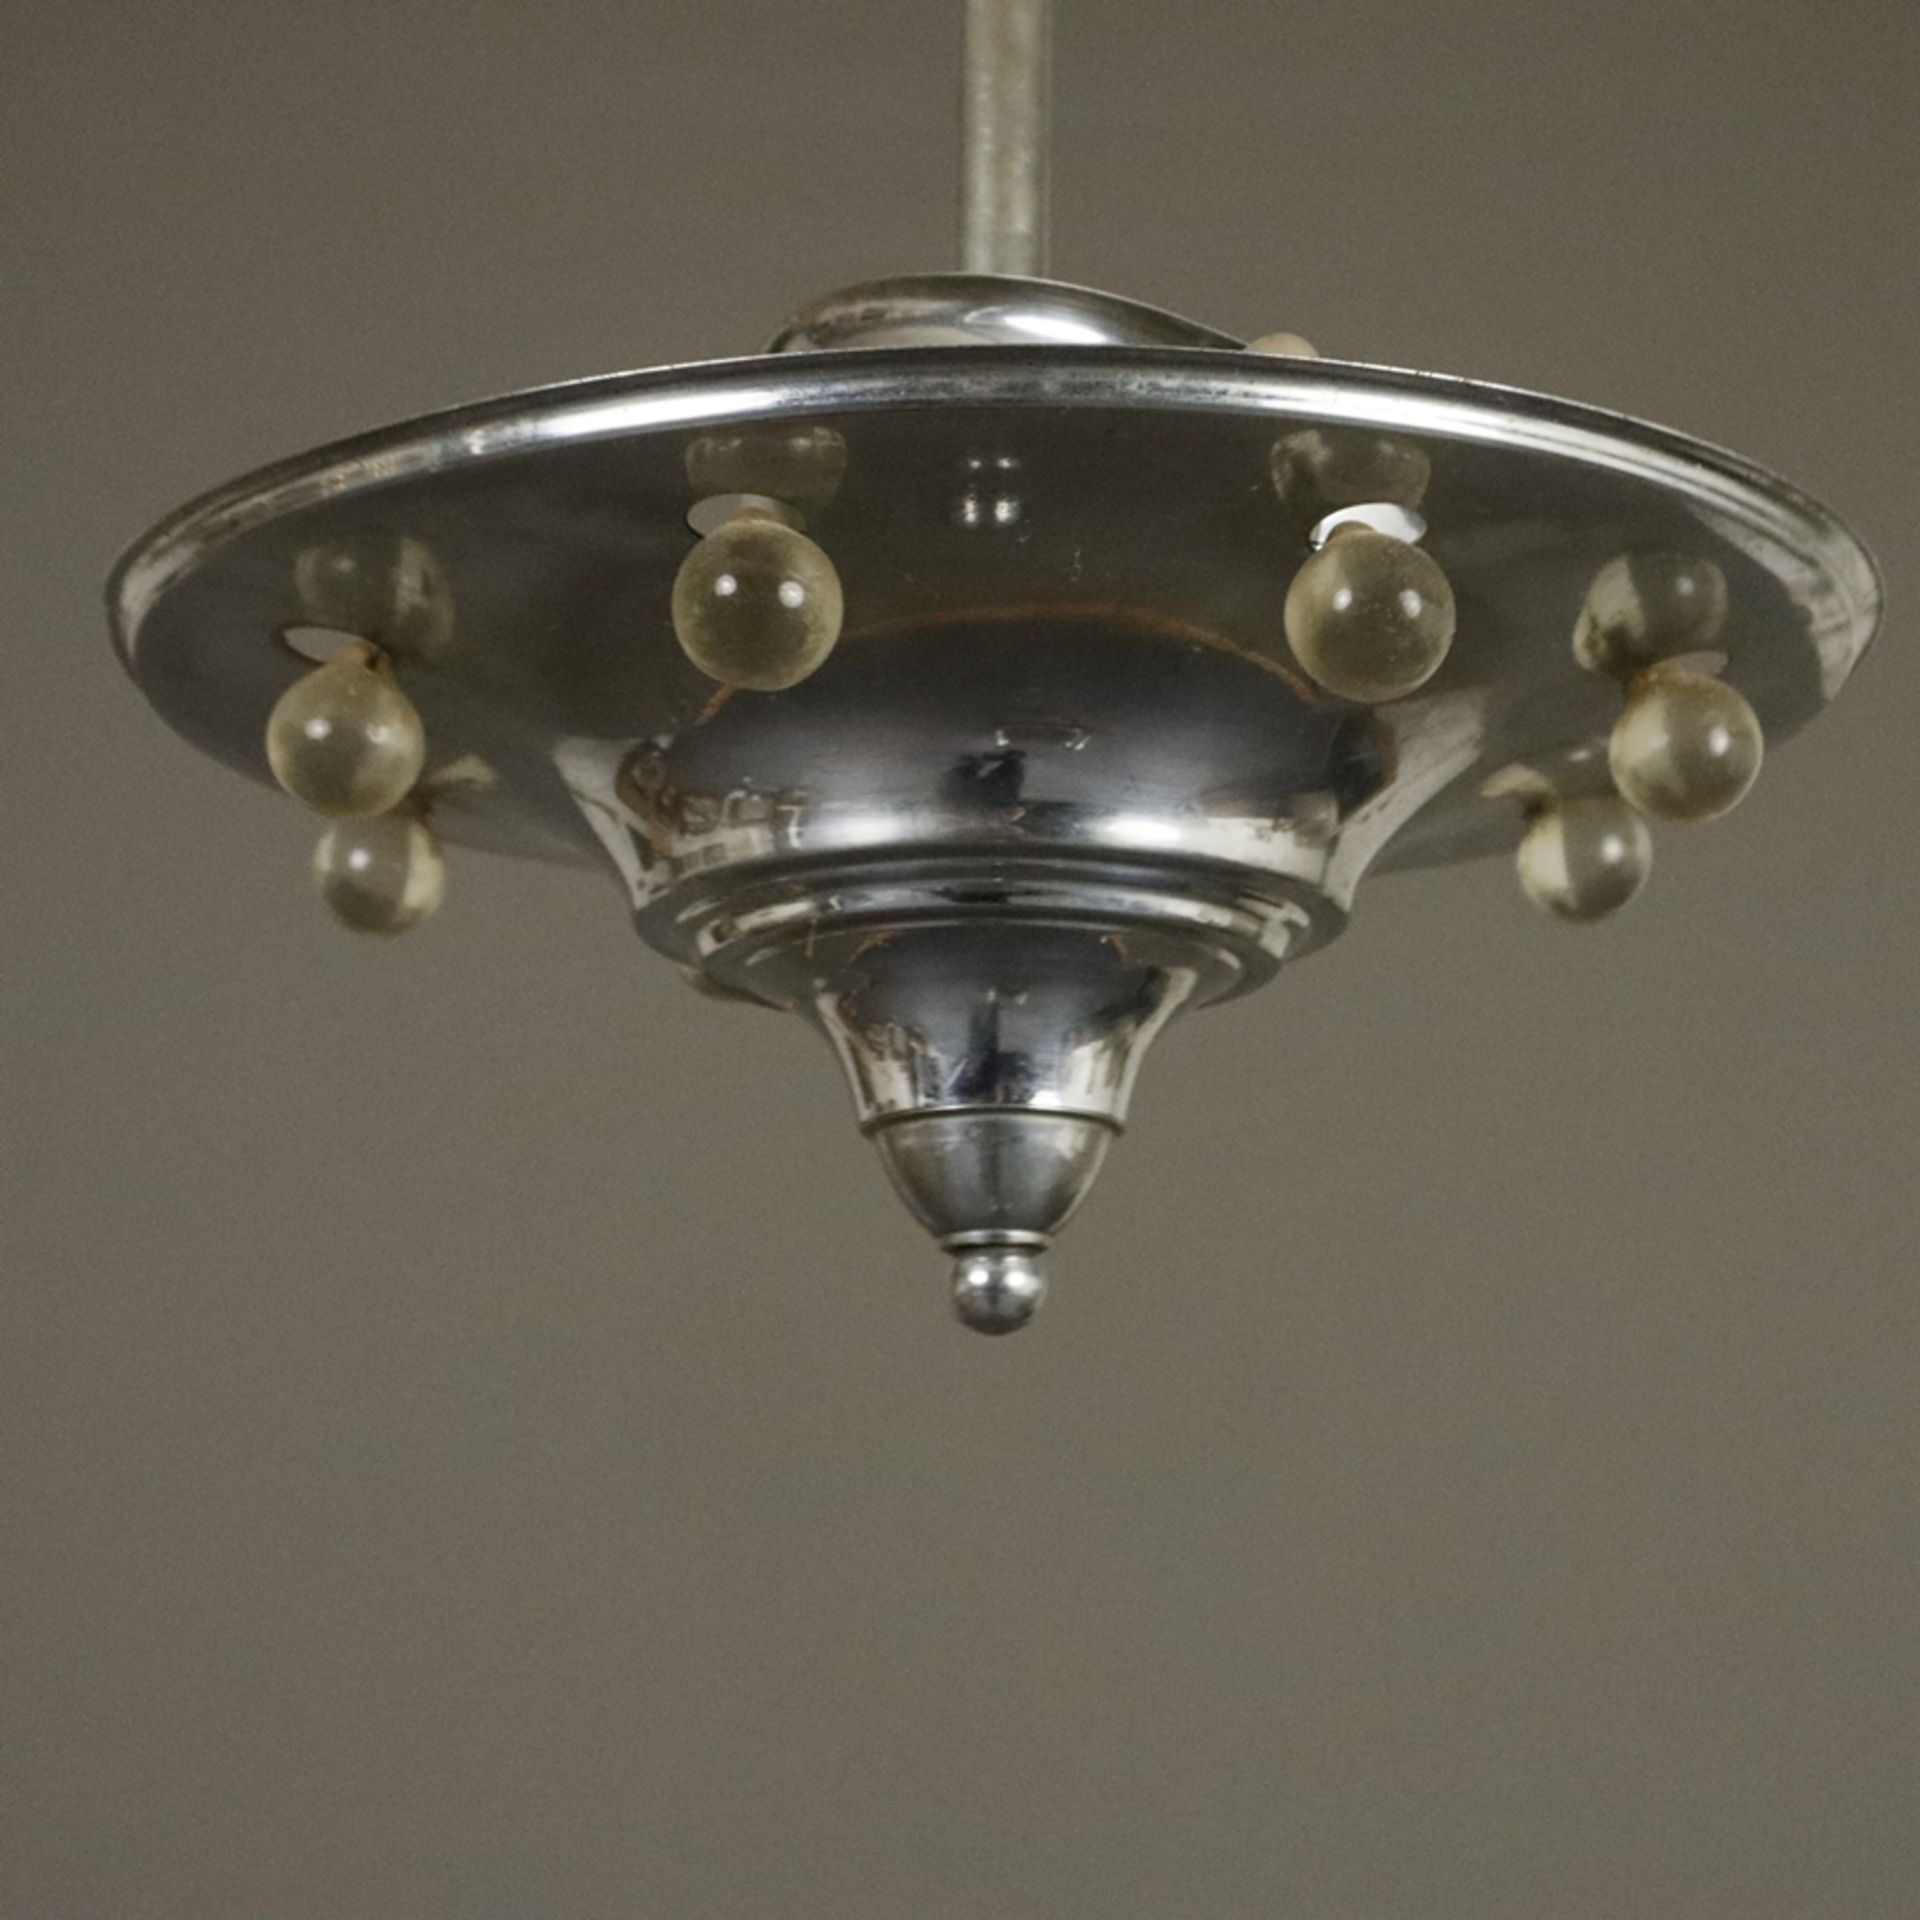 Art Déco-Deckenlampe - wohl Frankreich um 1920/30, trichterförmige Metallschale mit umlaufendem Gla - Bild 2 aus 5